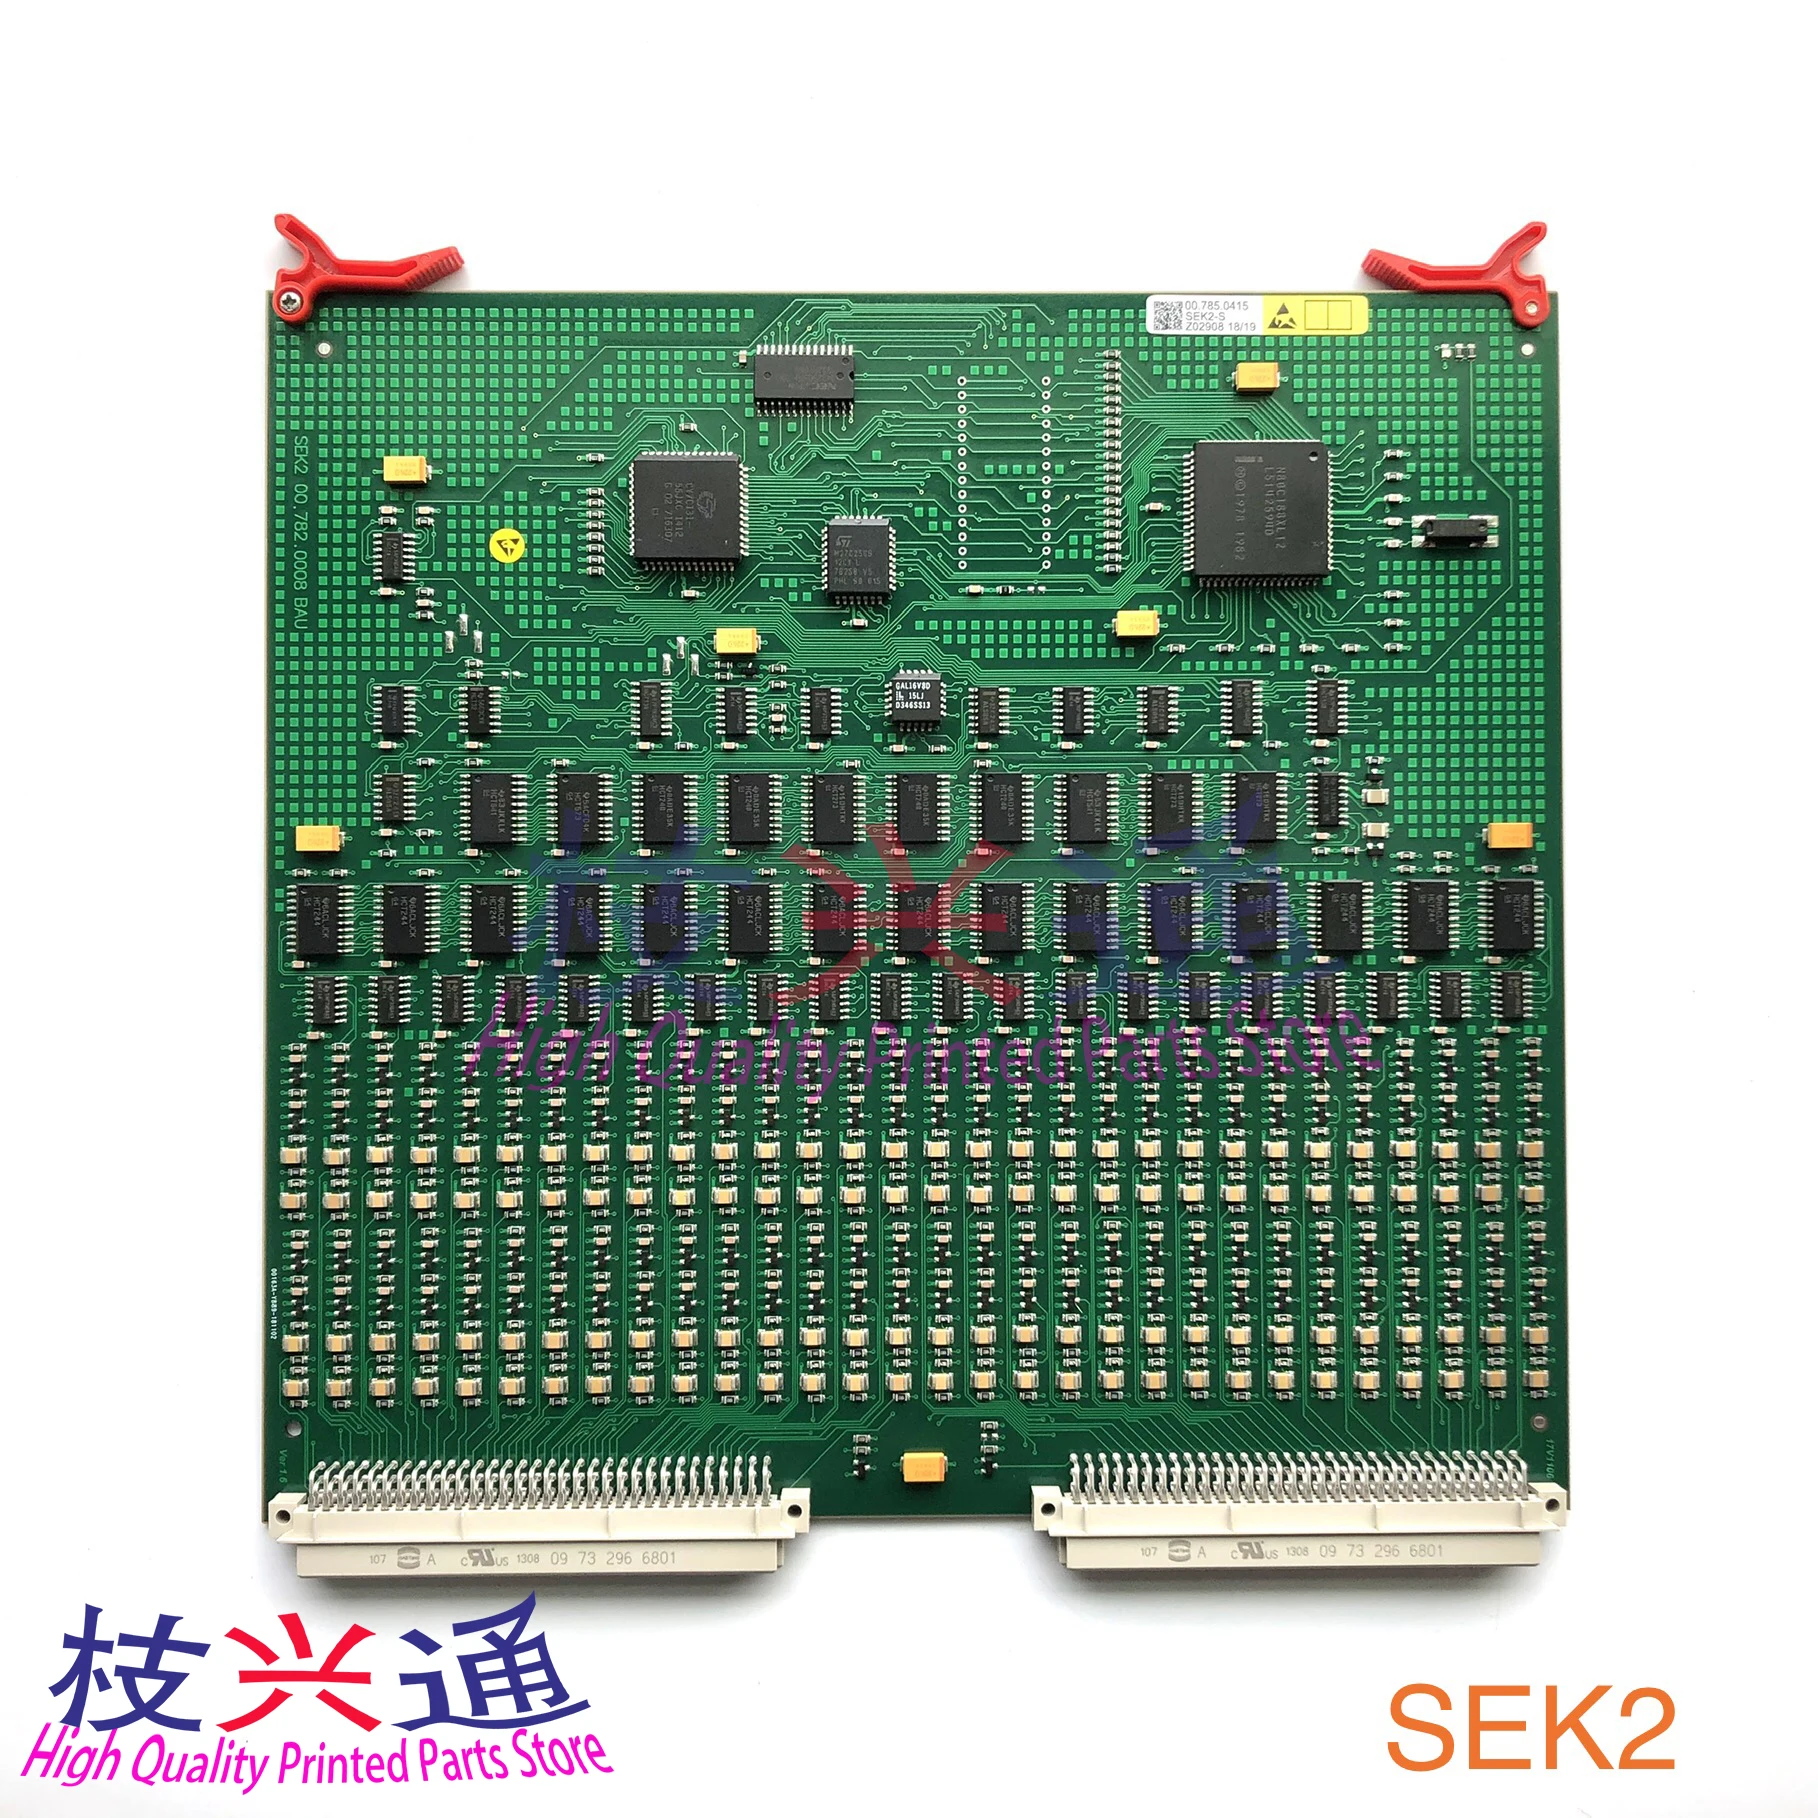 

SEK2 compatible board 91.186.6021 00.785.0415 00.781.5851 00.785.1185 SM102 CD102 board SEK